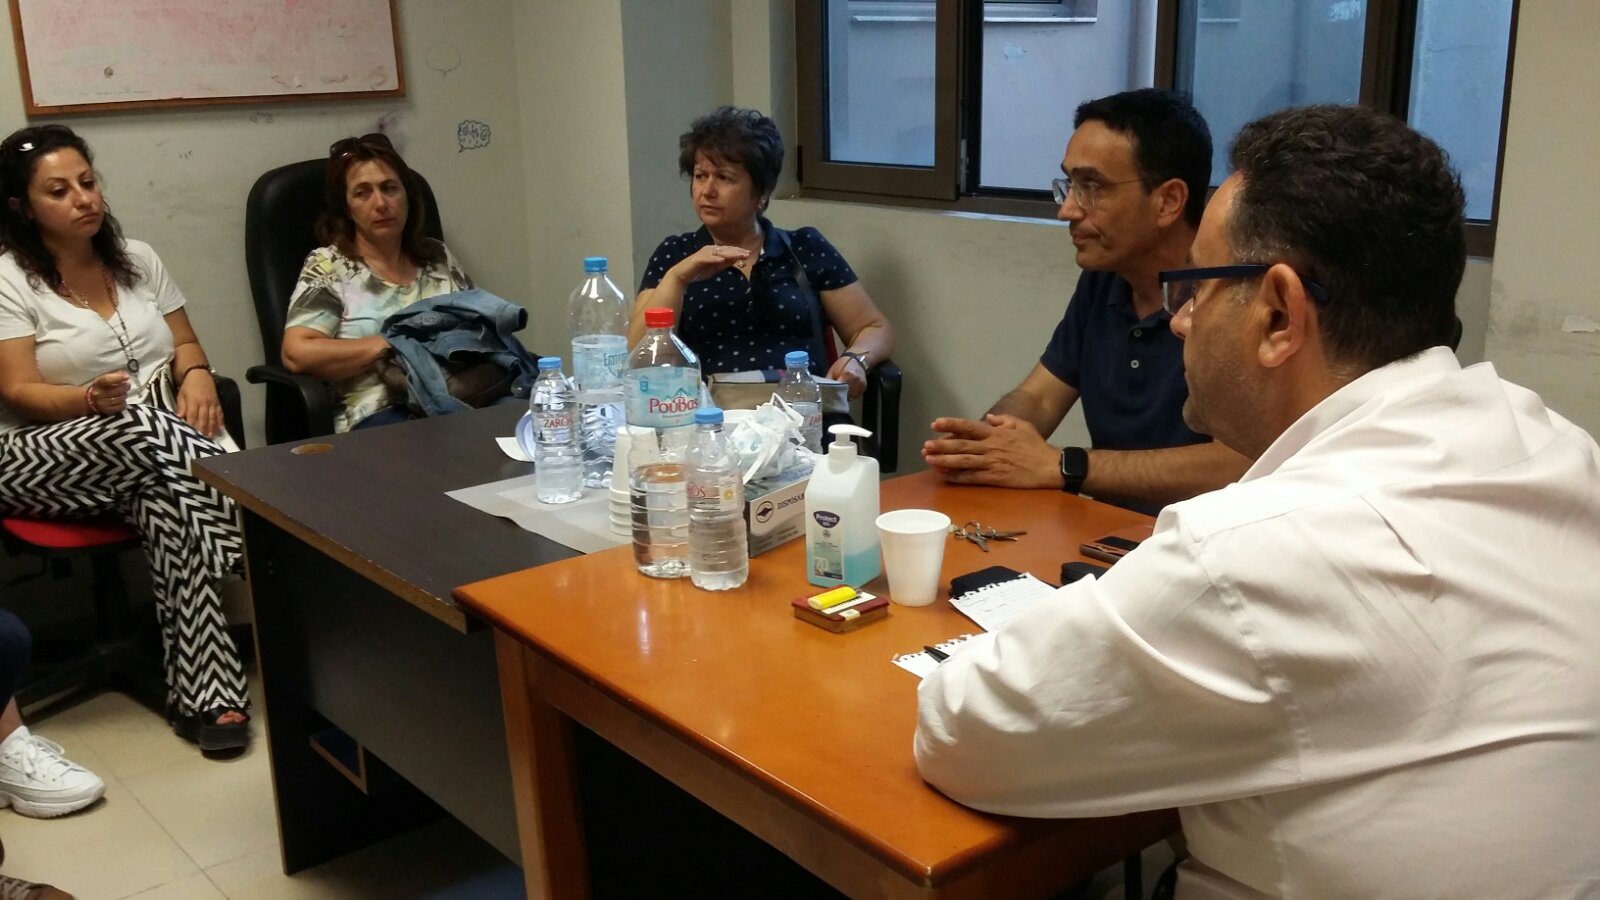 Συνάντηση του ΚΚΕ Ηρακλείου με συμβασιούχους επικουρικούς εργαζόμενους σε μονάδες υγείας